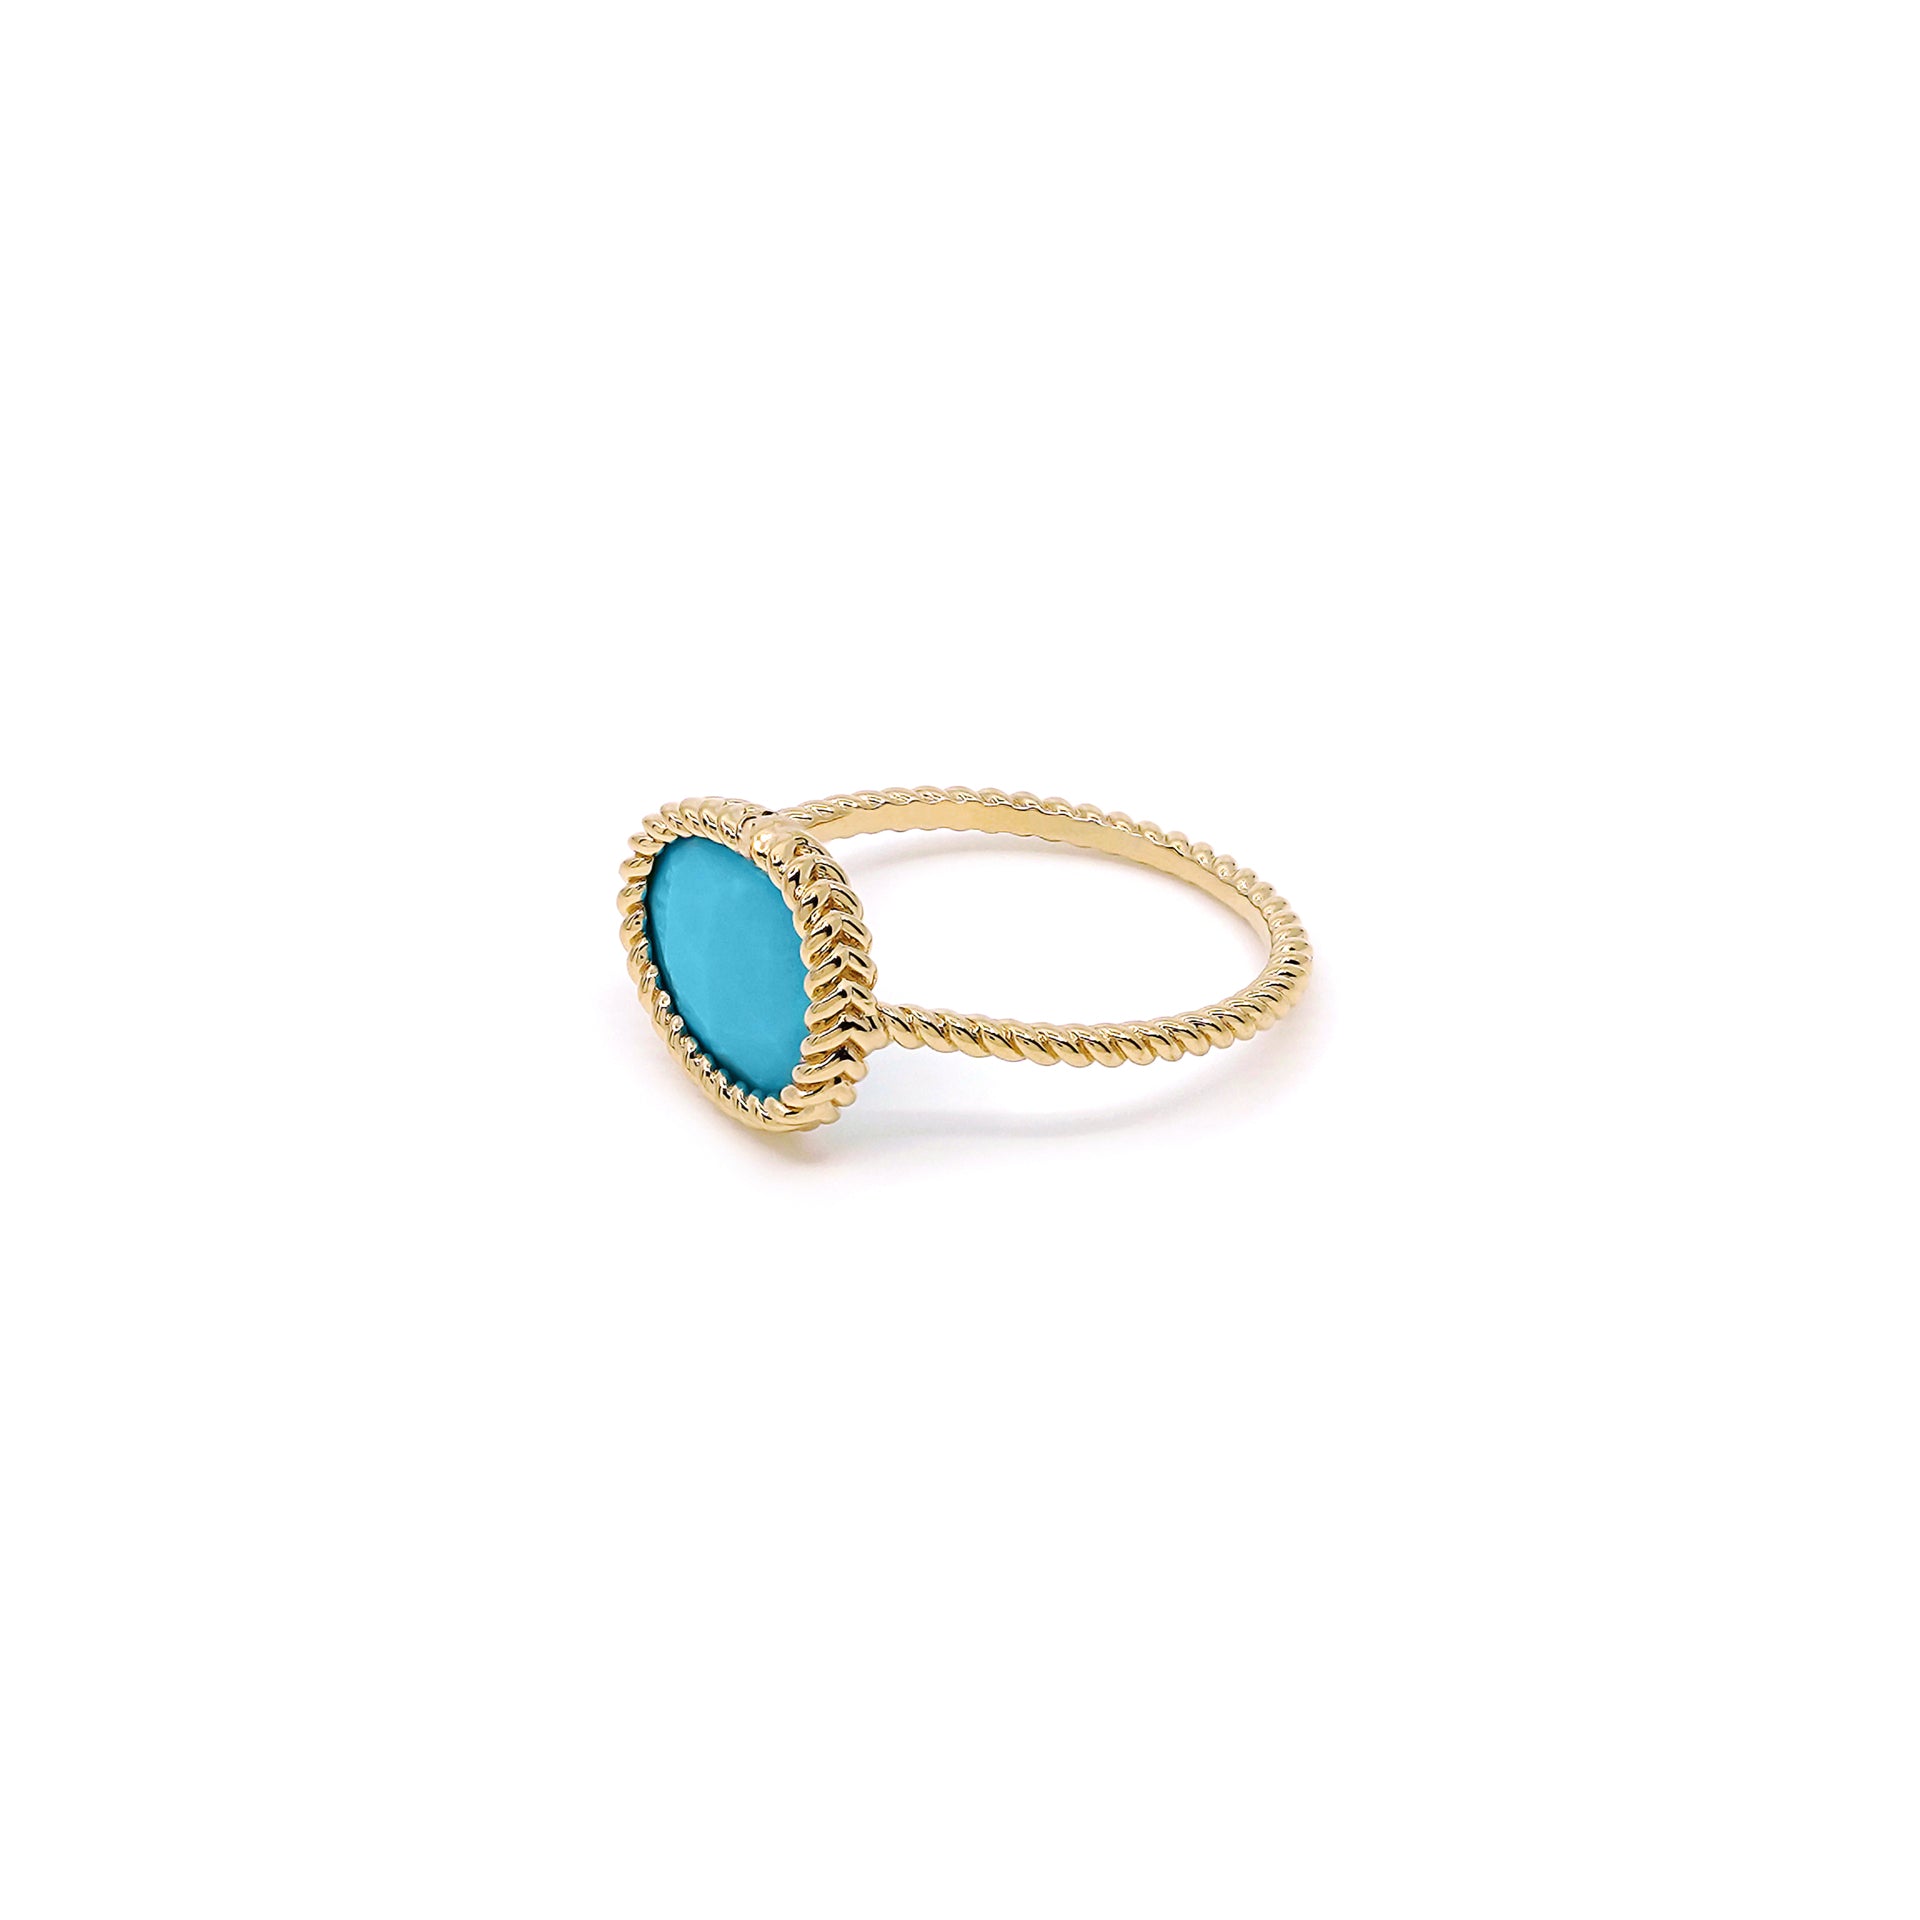 Nina Mariner Large Single Band Turquoise Ring